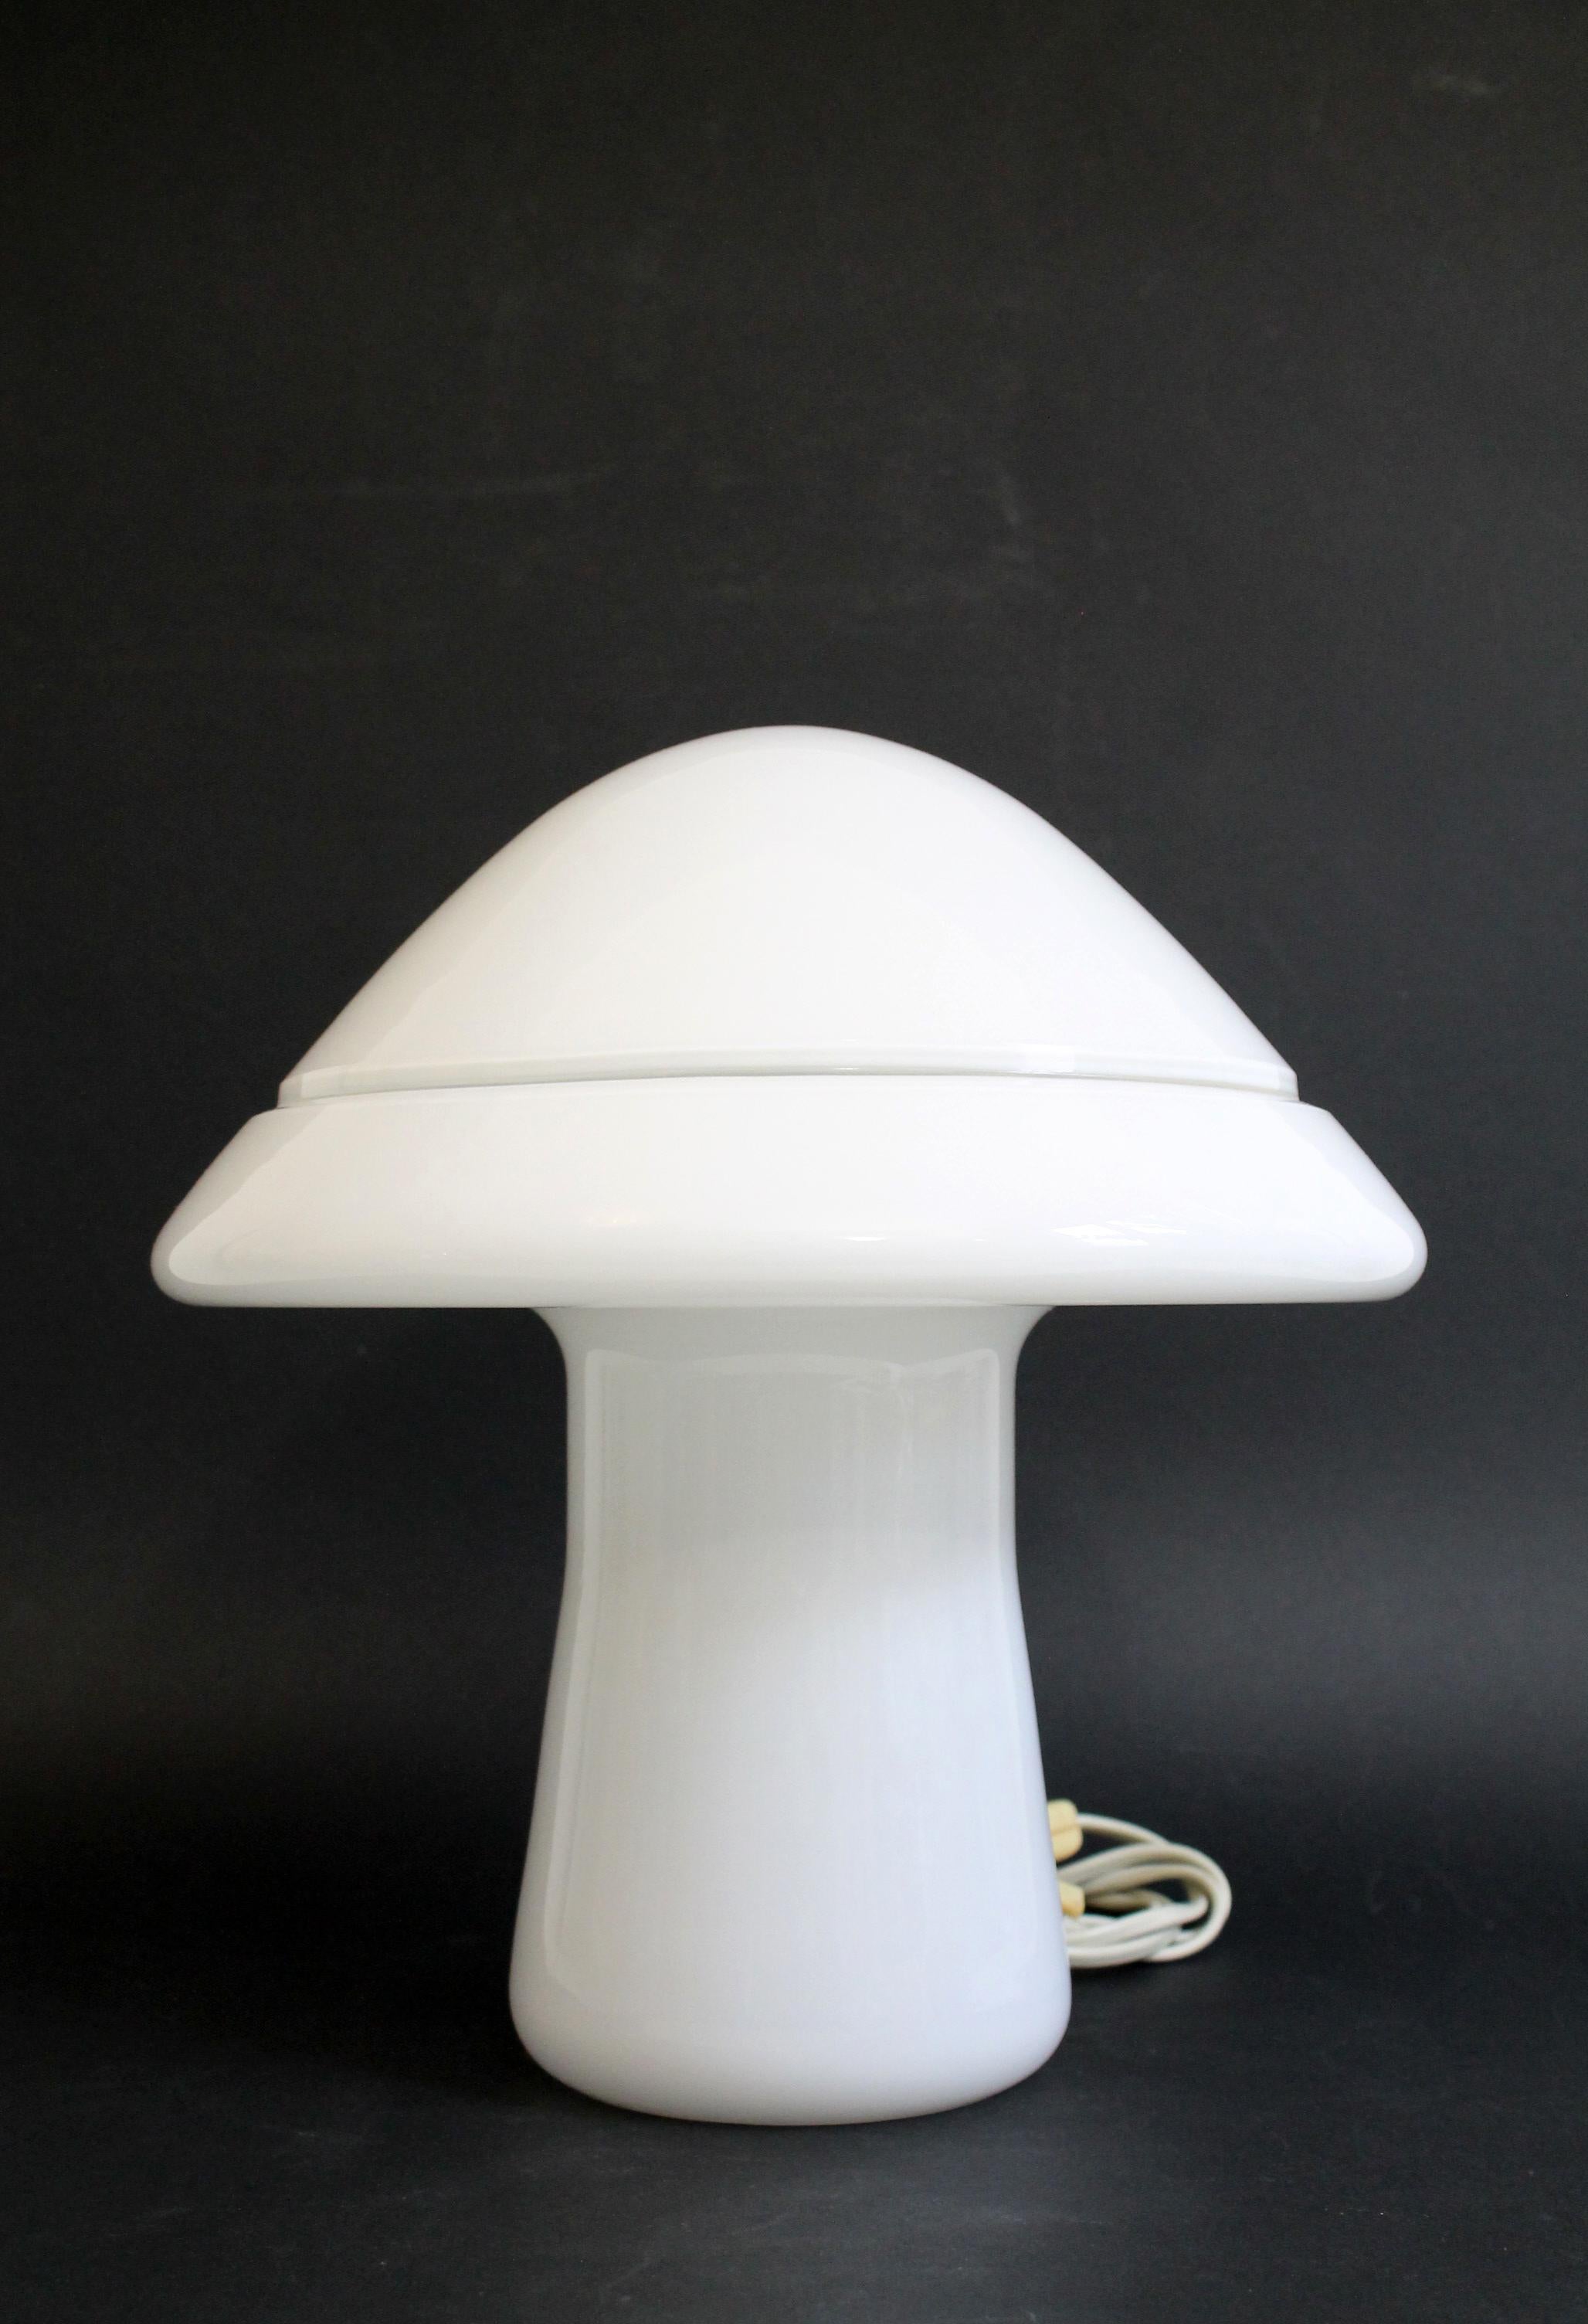 Superbe original de Murano de taille moyenne : RES MURANO. Fabriqué en Italie
Lampe de table en verre blanc des années 1970.
L'autocollant d'origine est toujours là. Tout simplement parfait et prêt à être apprécié dans votre maison.
Technique :